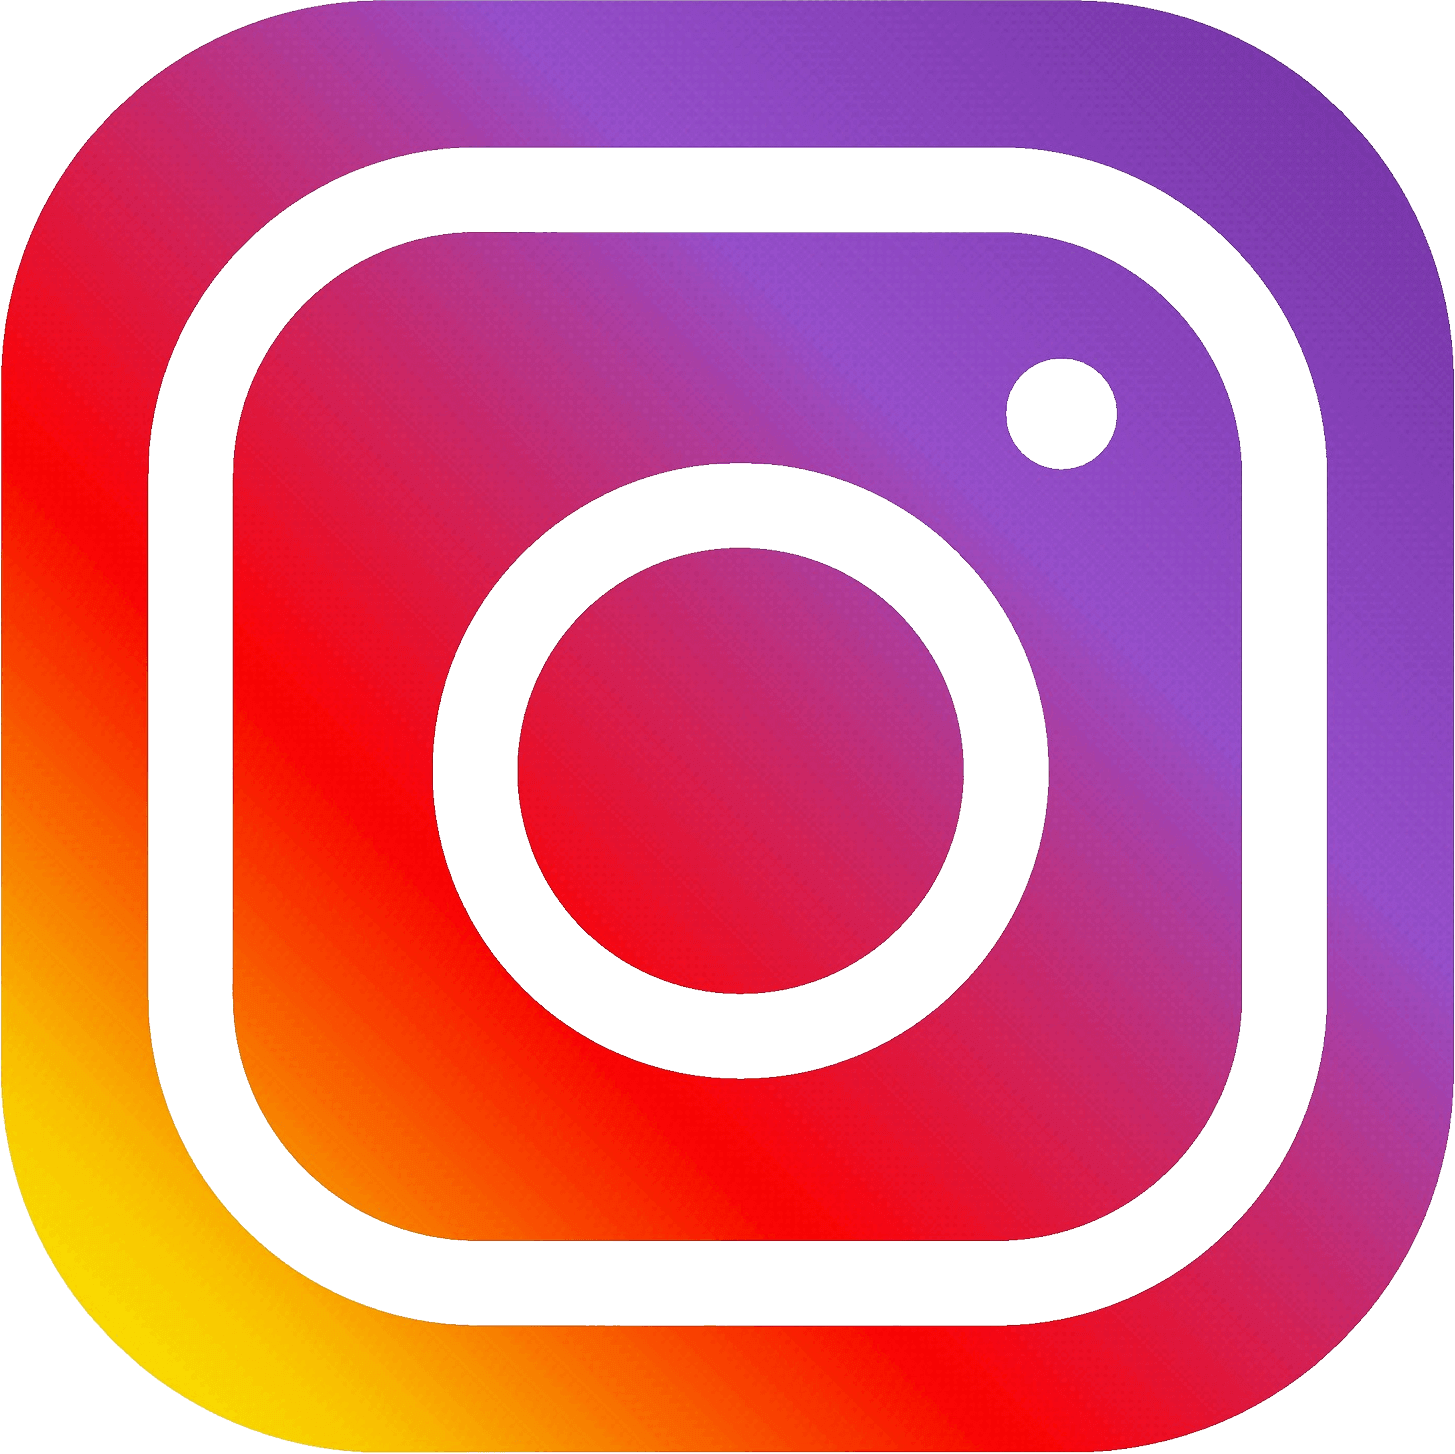 logo-instagram-1.png